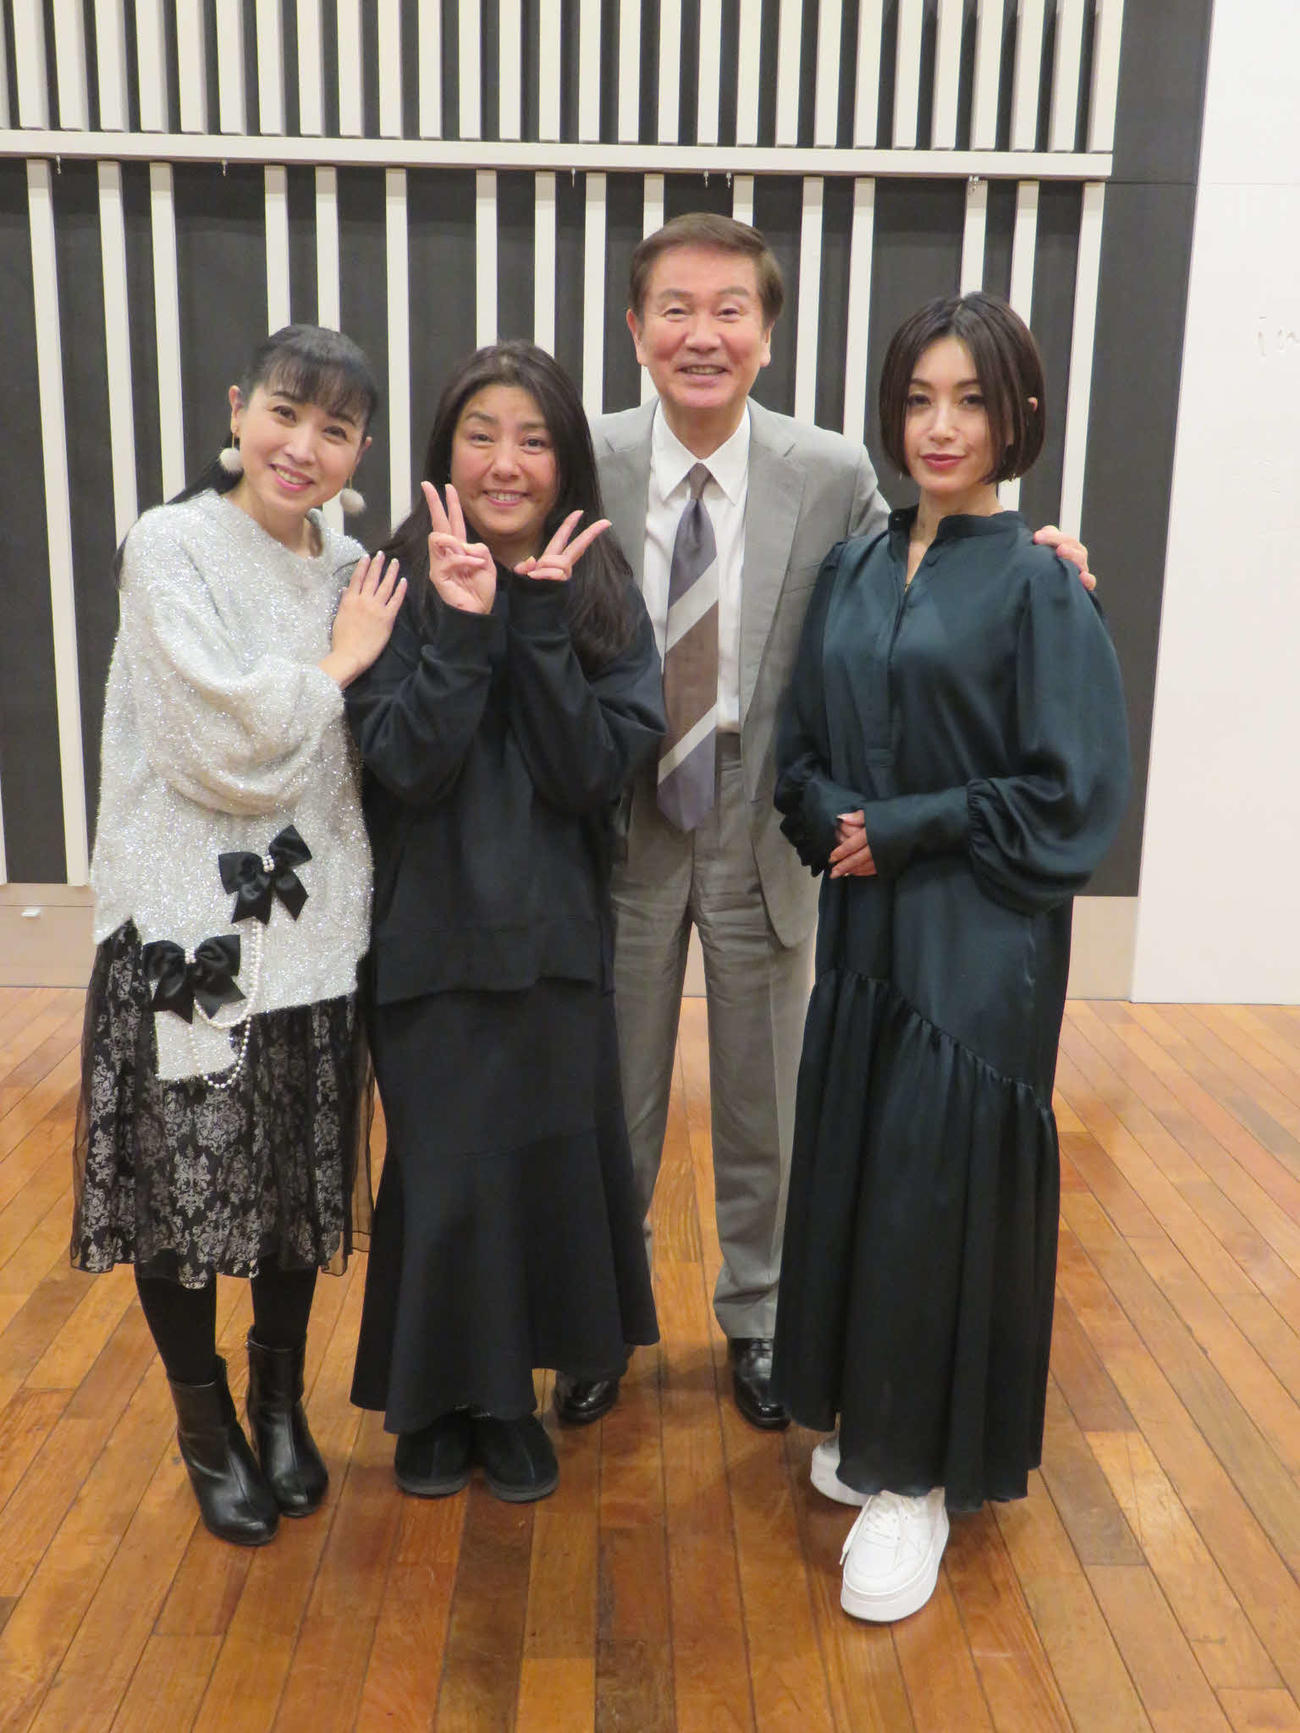 ラジオの収録で共演した、左から西村知美、立花理佐、森田健作、酒井法子